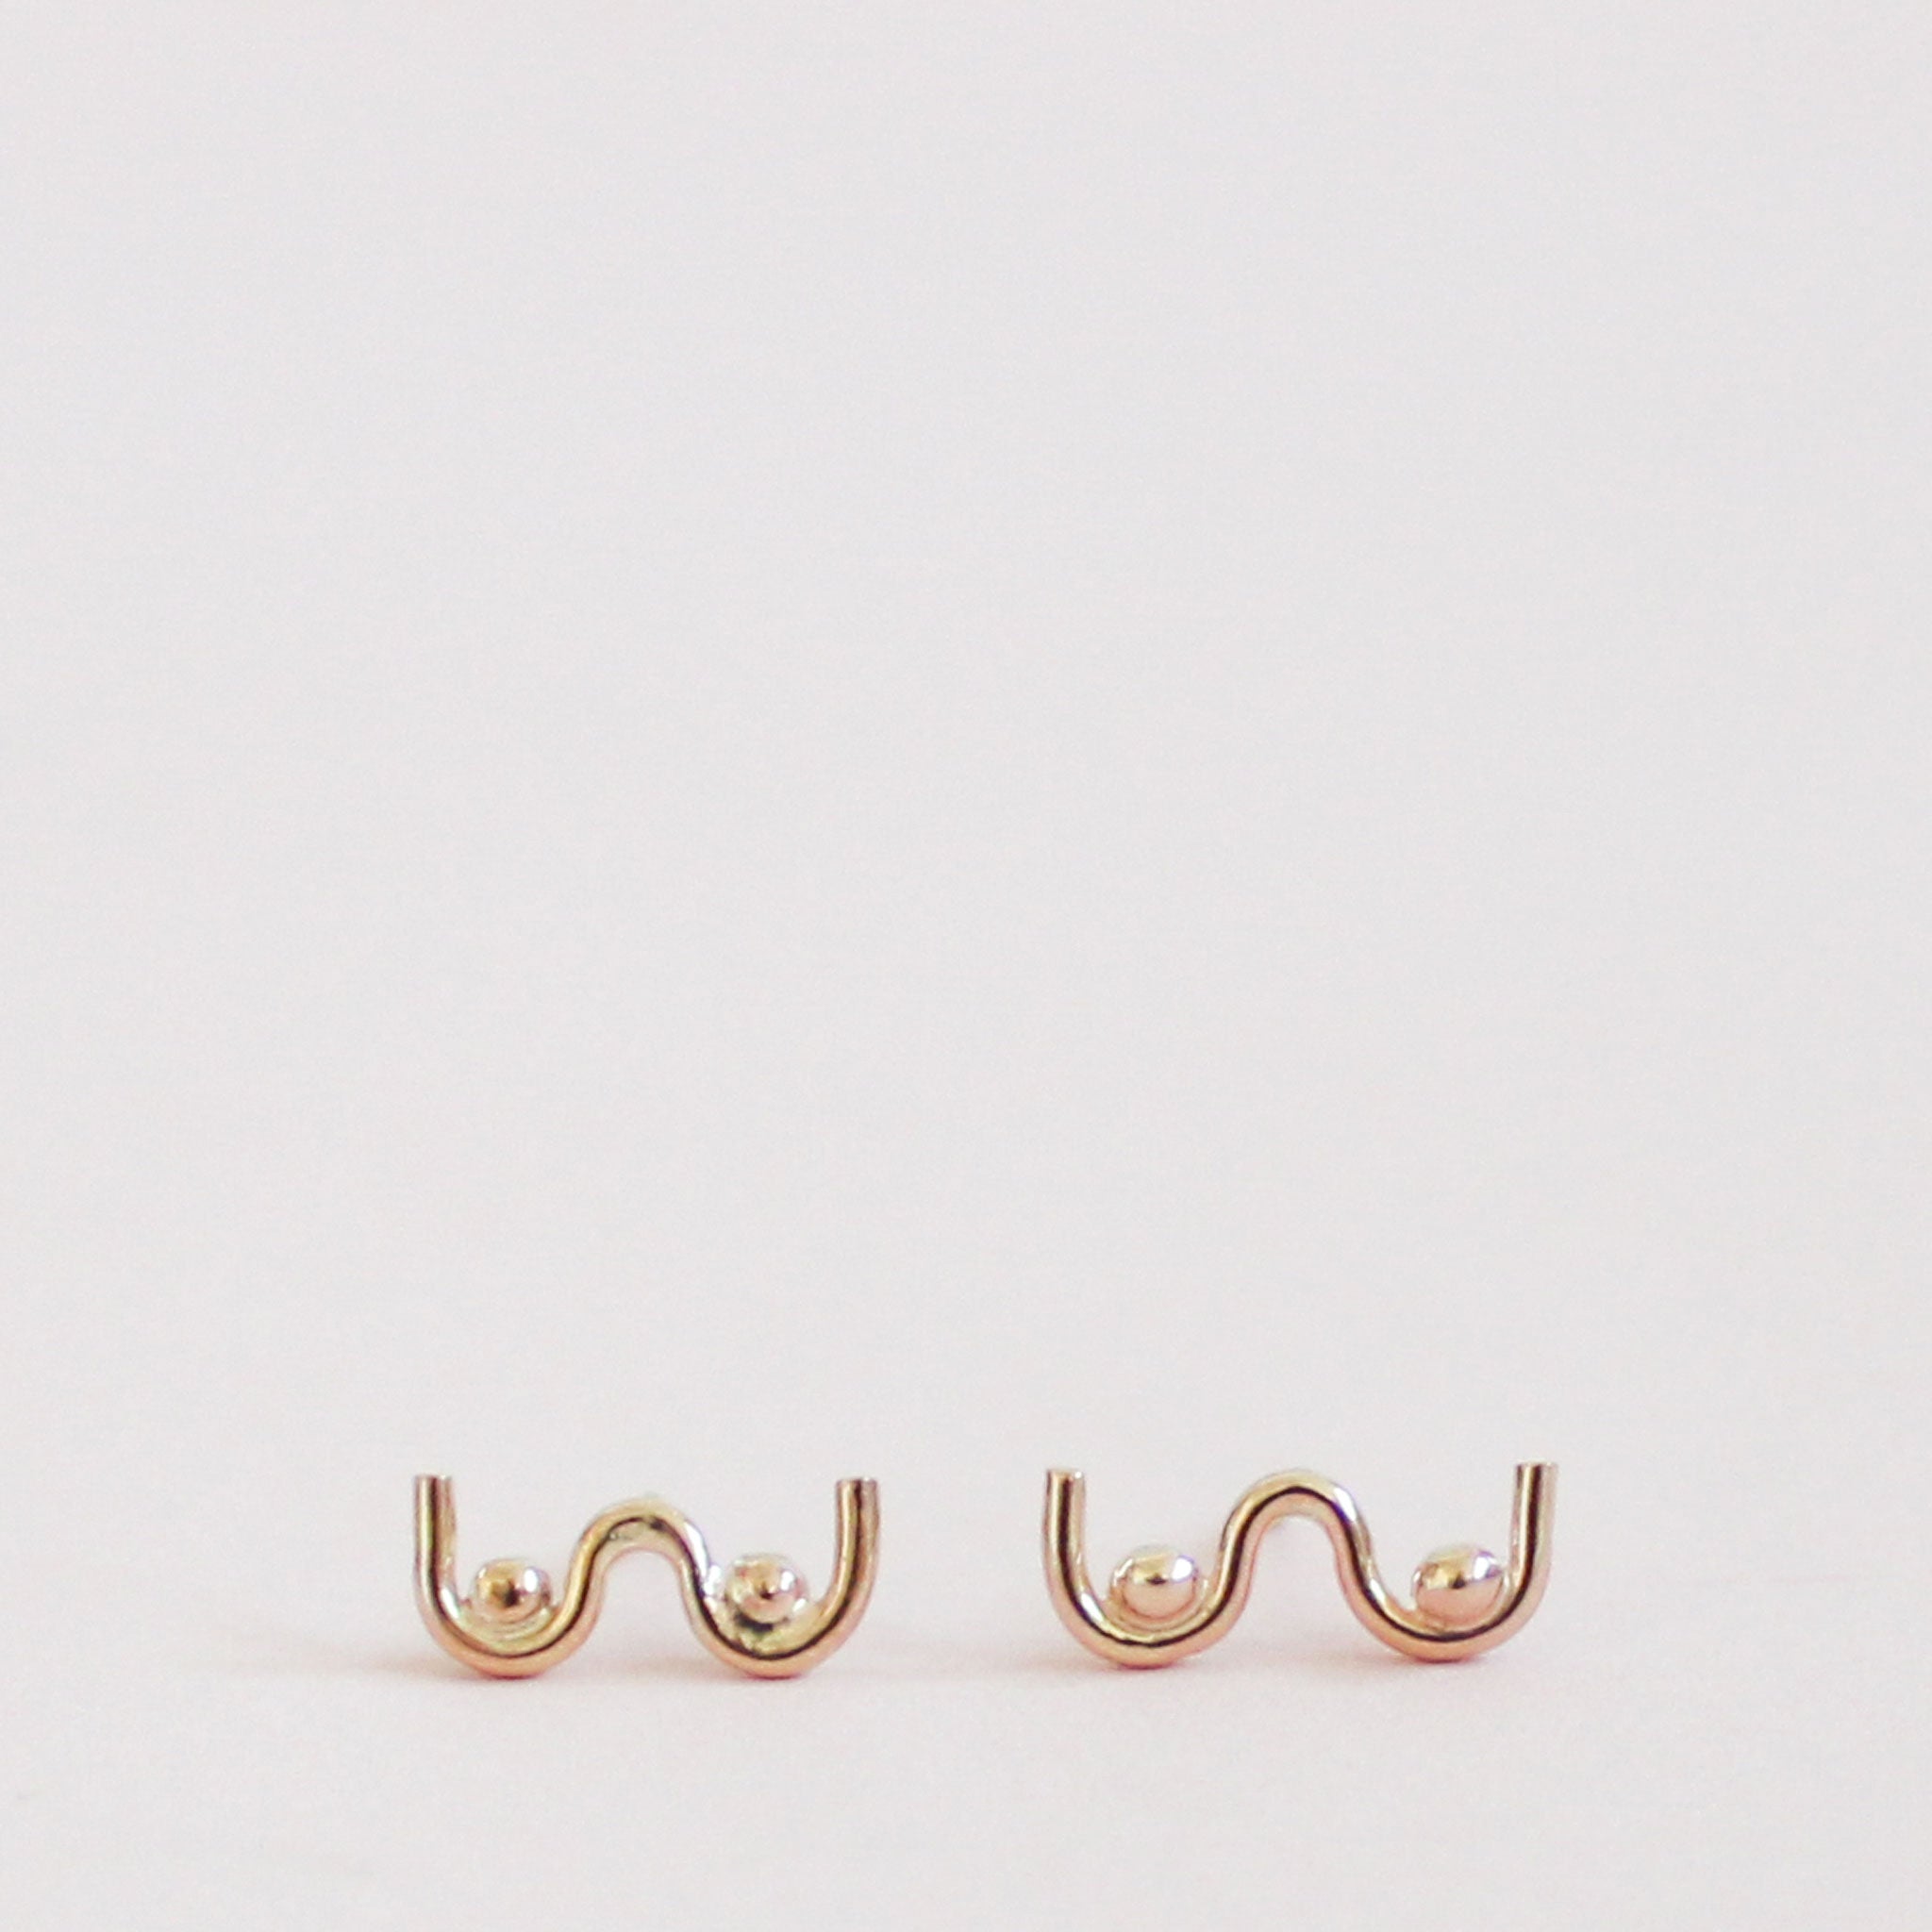 old pair of boob shaped stud earrings